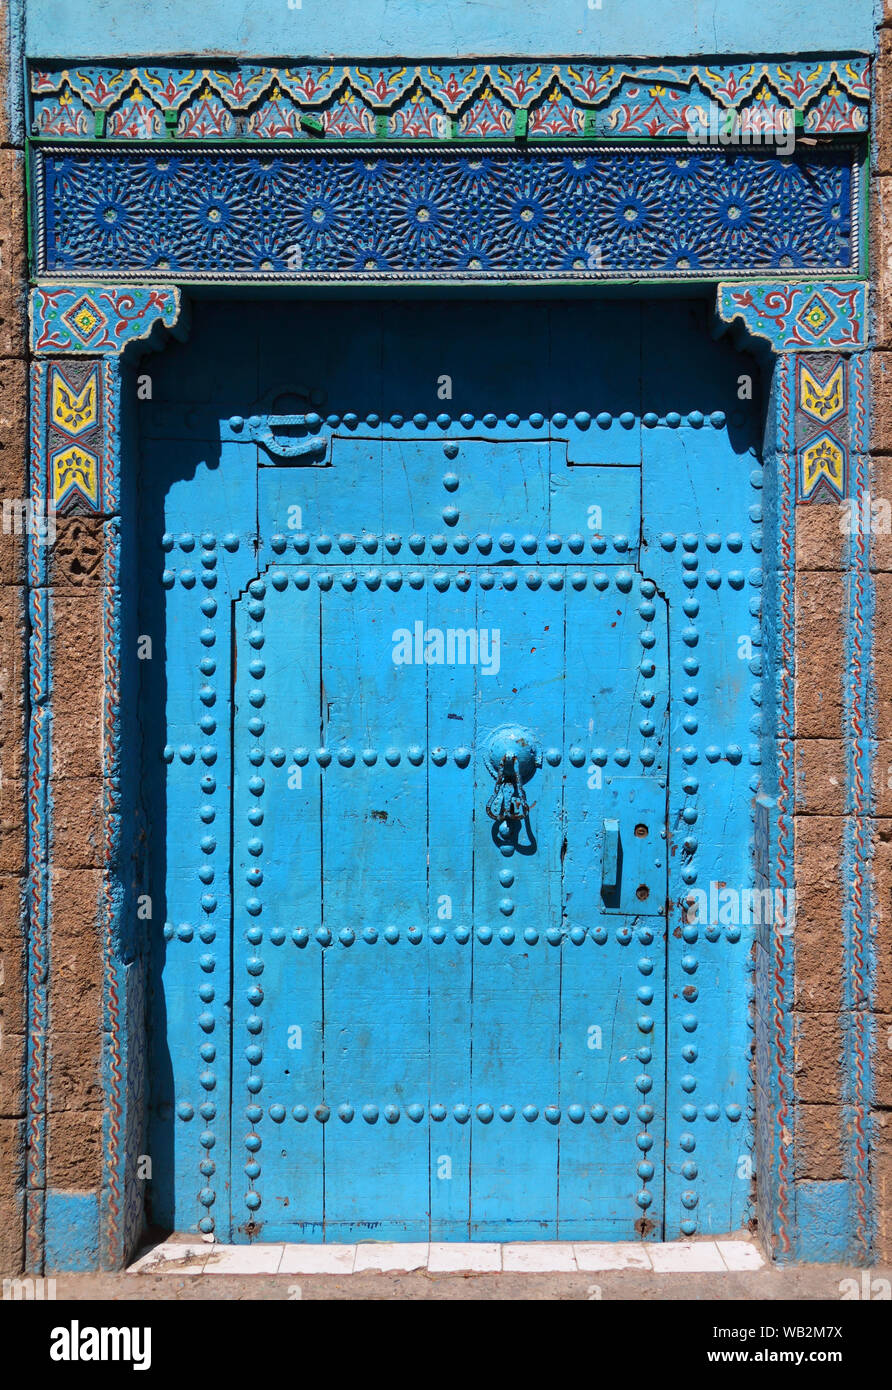 Tipica medievale stile arabesco blu, intricate sculture, costellata, riad marocchino porta e porta-cornice, Azemmour, El Jadida, Marocco. Foto Stock